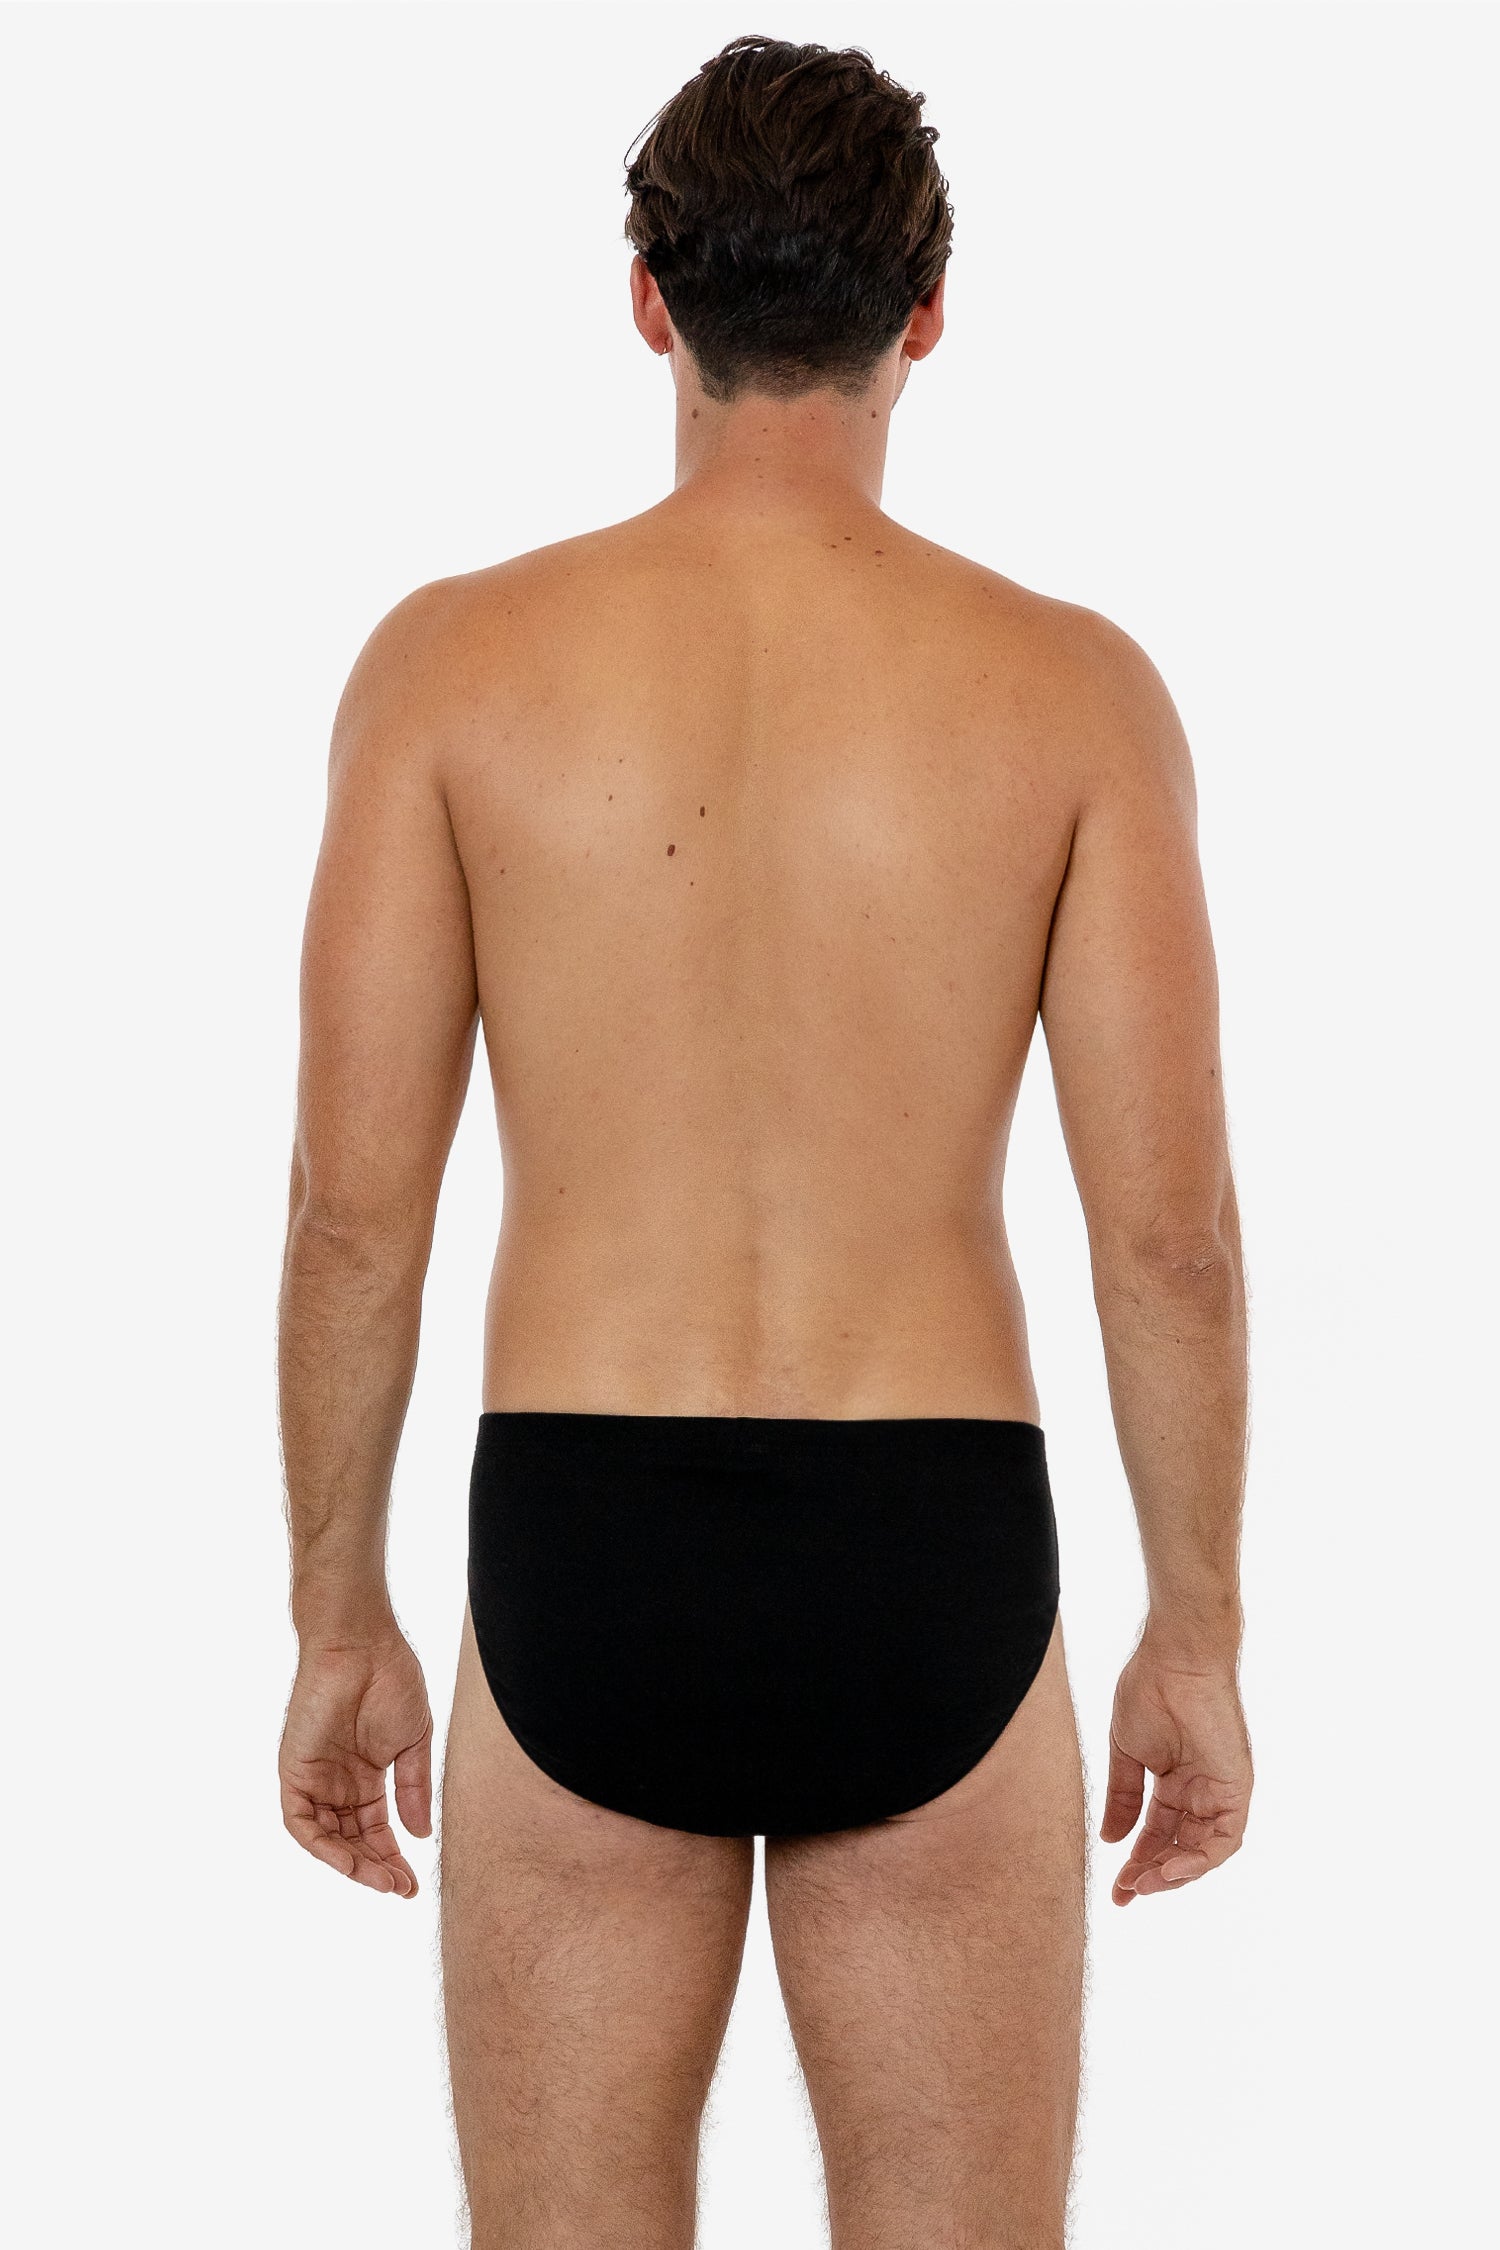  Euro - Men's Underwear Briefs / Men's Innerwear: Clothing &  Accessories